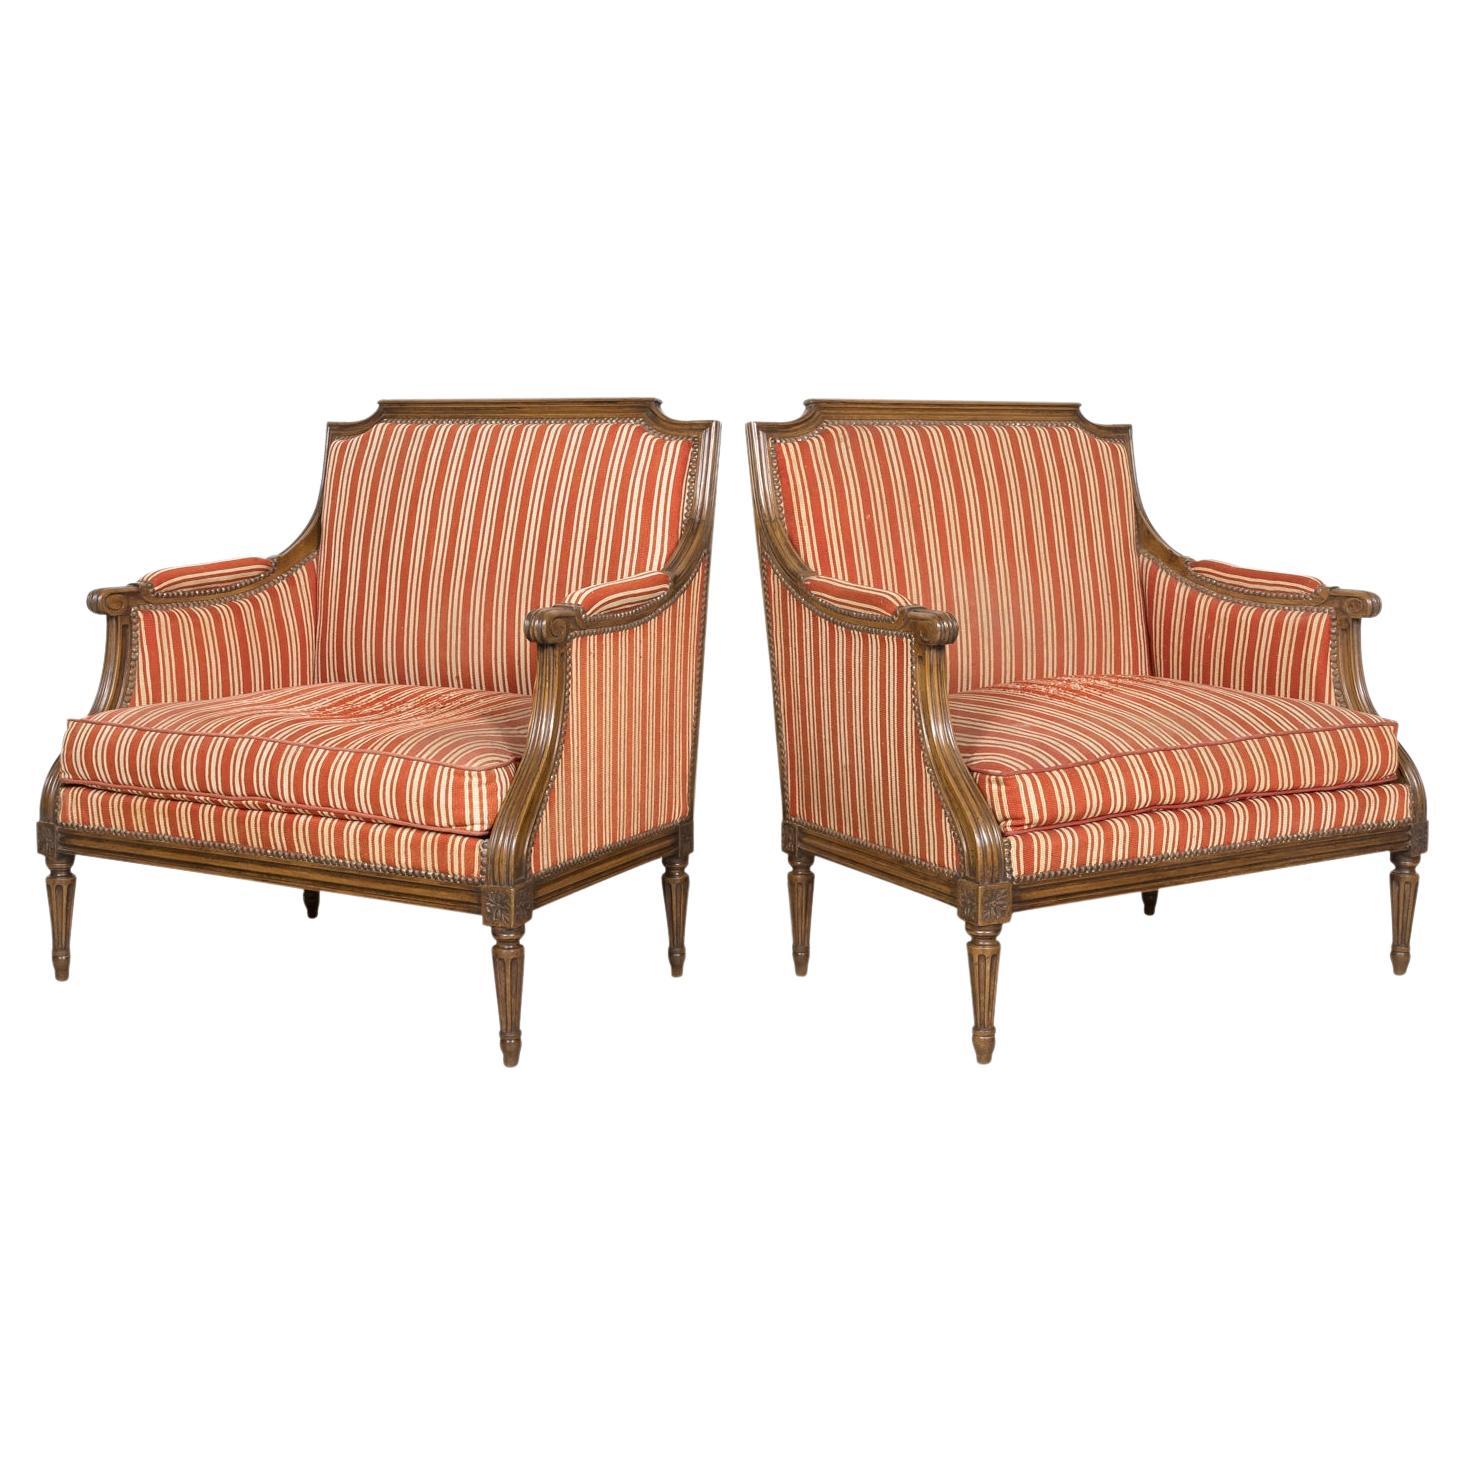 Paire de fauteuils surdimensionnés de style Louis XVI français du 19e siècle, de type Bergere Marquise